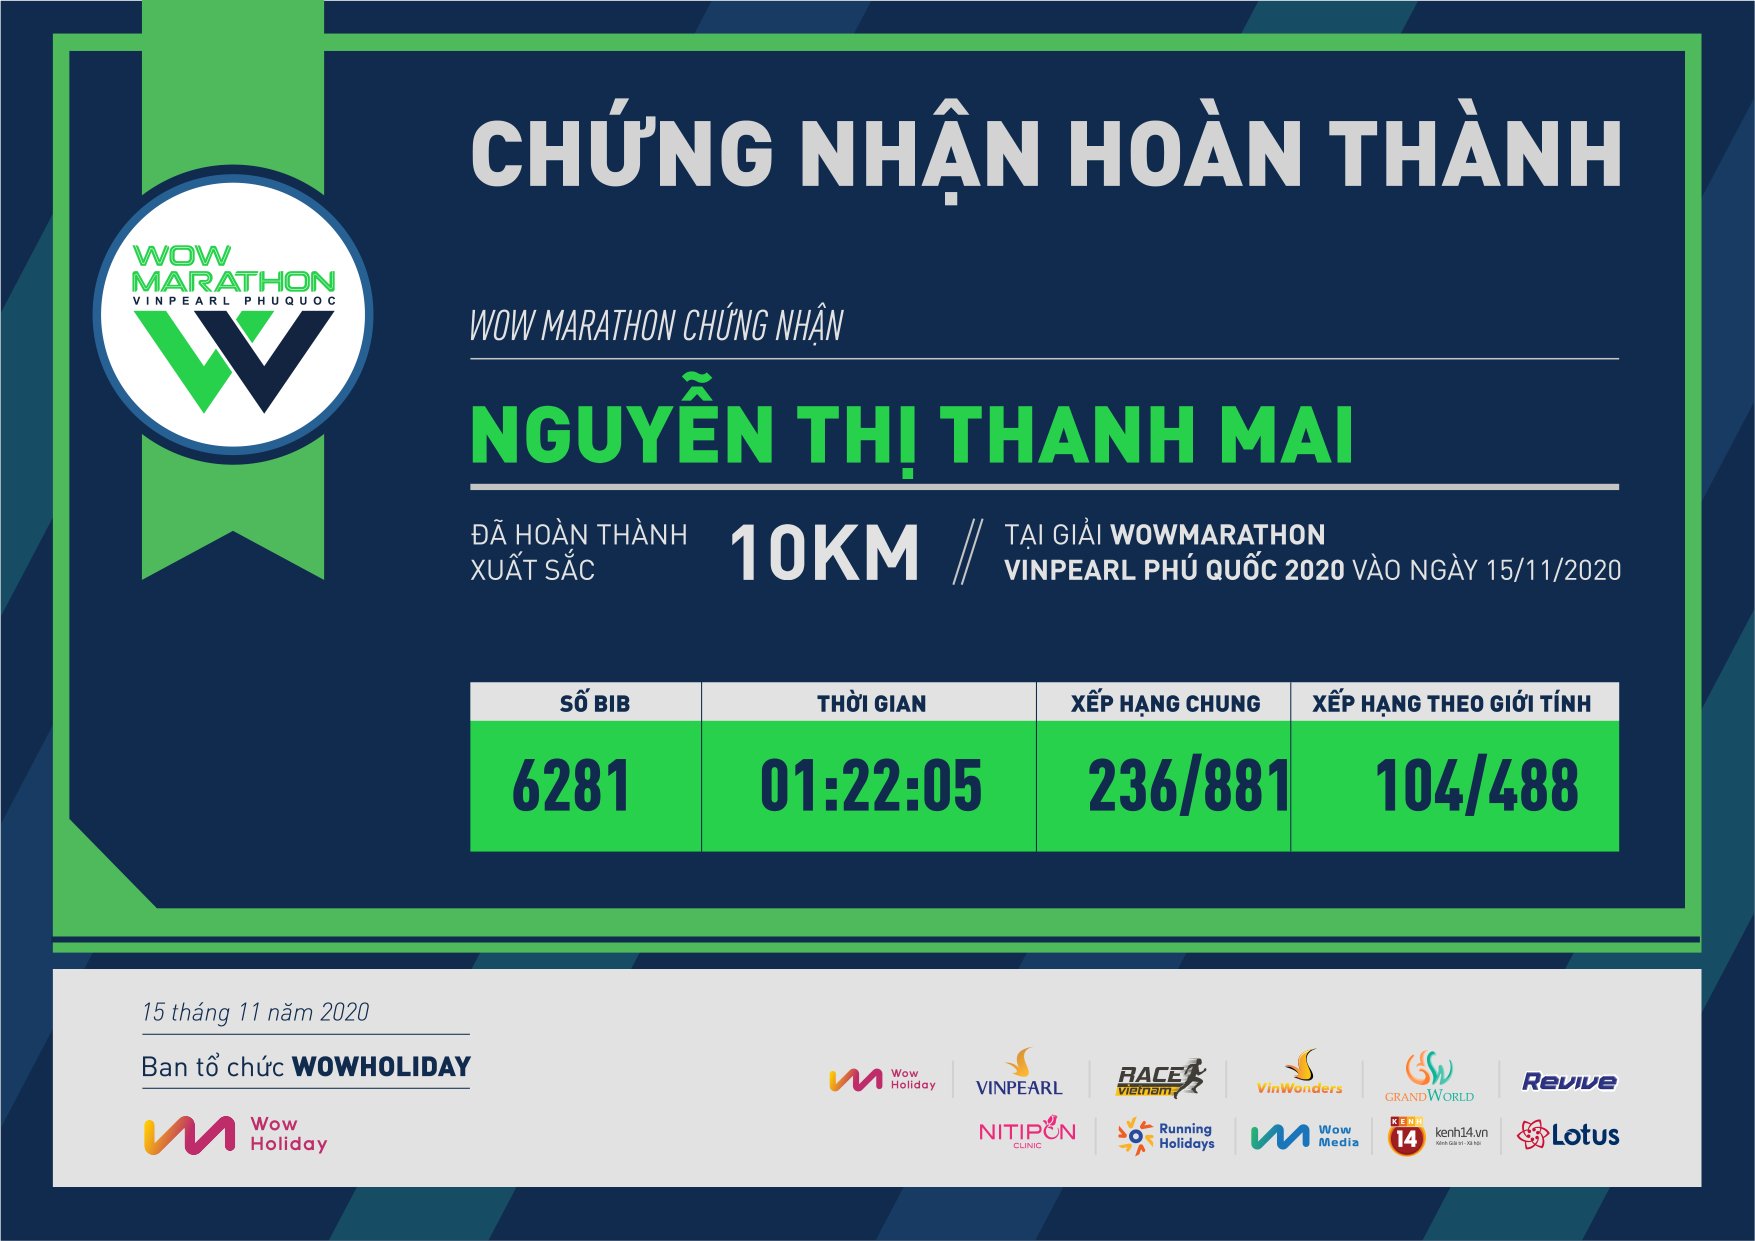 6281 - Nguyễn Thị Thanh Mai